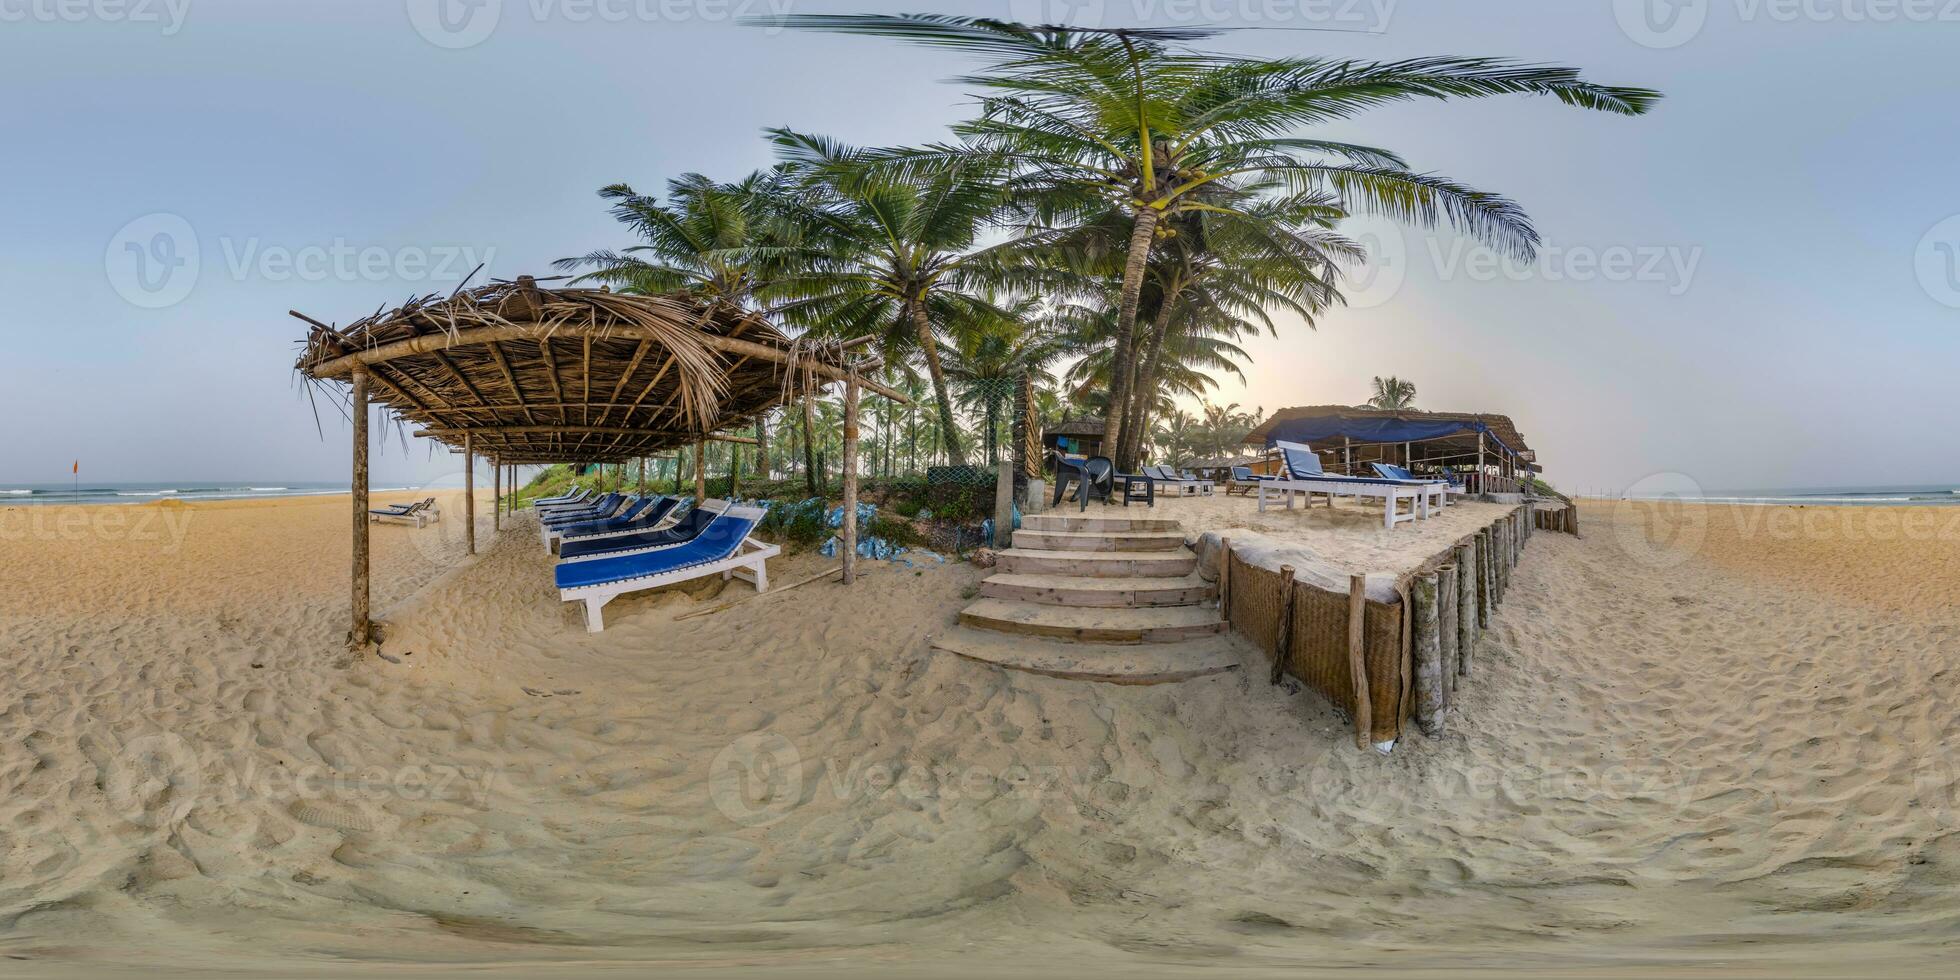 360 hdri Panorama mit Kokosnuss Bäume auf Ozean Küste in der Nähe von tropisch Hütte oder öffnen Cafe auf Strand mit Sonnenliegen im gleichwinklig kugelförmig nahtlos Projektion foto